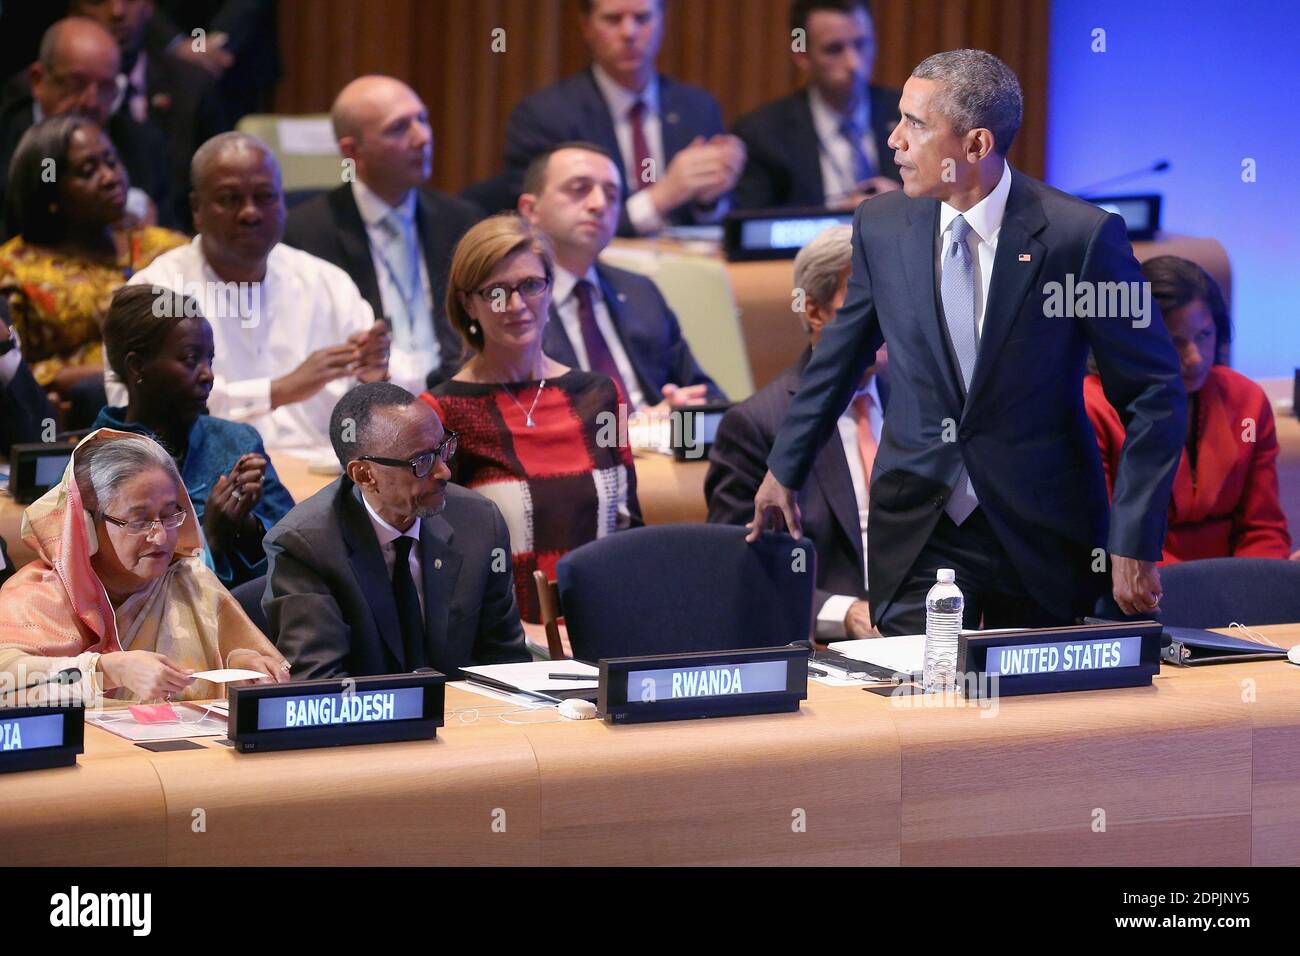 Le président américain Barack Obama prend son siège à côté du président rwandais Paul Kagame et du Premier ministre bangladais Sheikh Hasina (L) après avoir prononcé des remarques lors du Sommet des dirigeants sur le maintien de la paix lors de la 70e Assemblée générale annuelle des Nations Unies au siège des Nations Unies le 28 septembre 2015 à New York, NY, États-Unis. Obama a tenu une réunion bilatérale avec le Premier ministre indien Narendra Modi et avec avoir une rencontre en face à face avec le président russe Vladimir Poutine plus tard dans la journée. Photo par Chip Somodevilla/Pool/ABACAPRESS.COM Banque D'Images